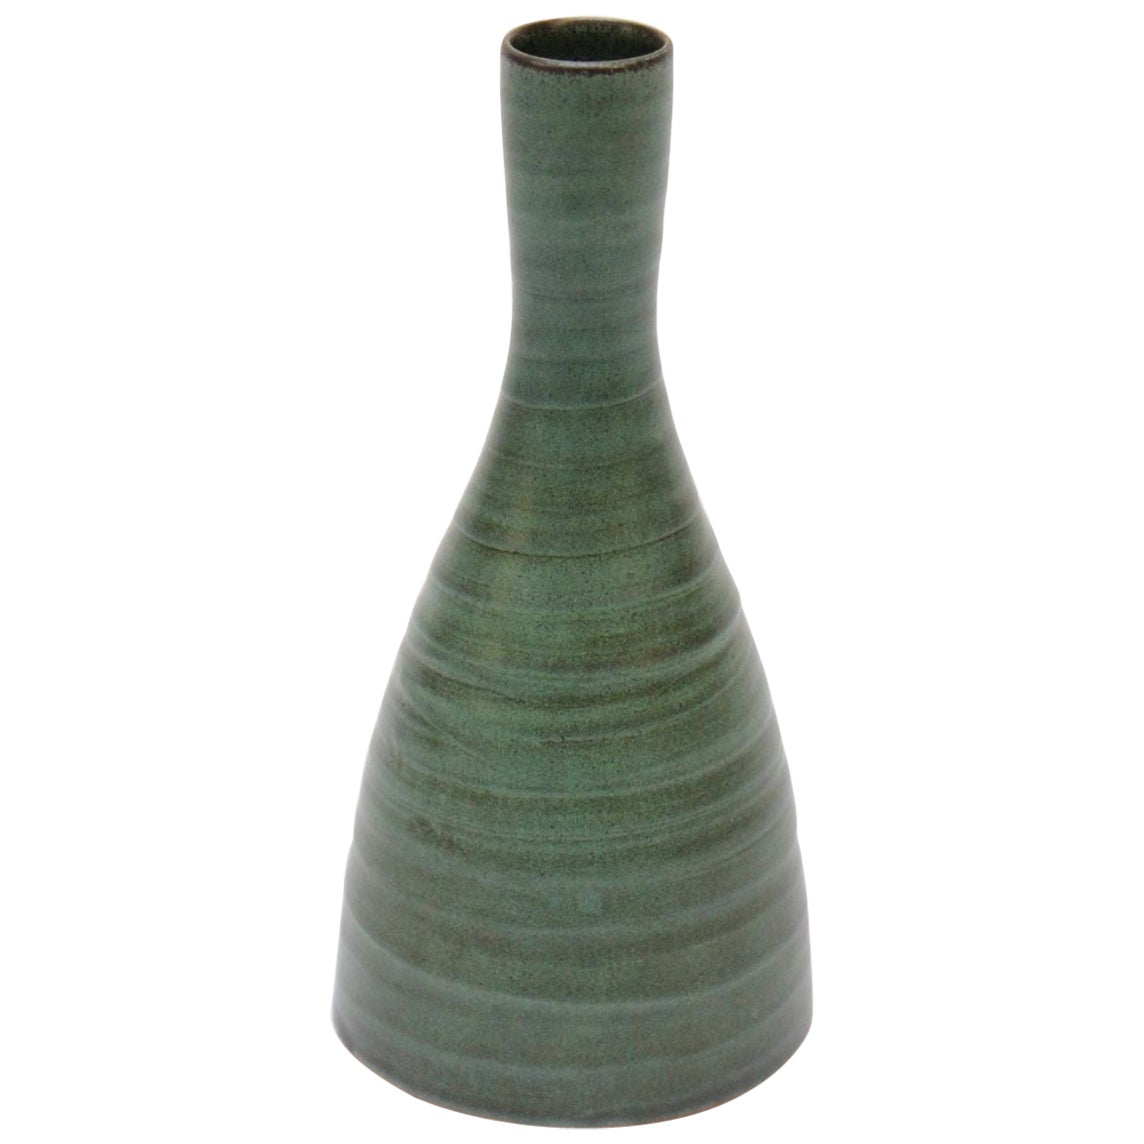 Scandinavian Modern Terracotta Vase with Matte Green Glaze